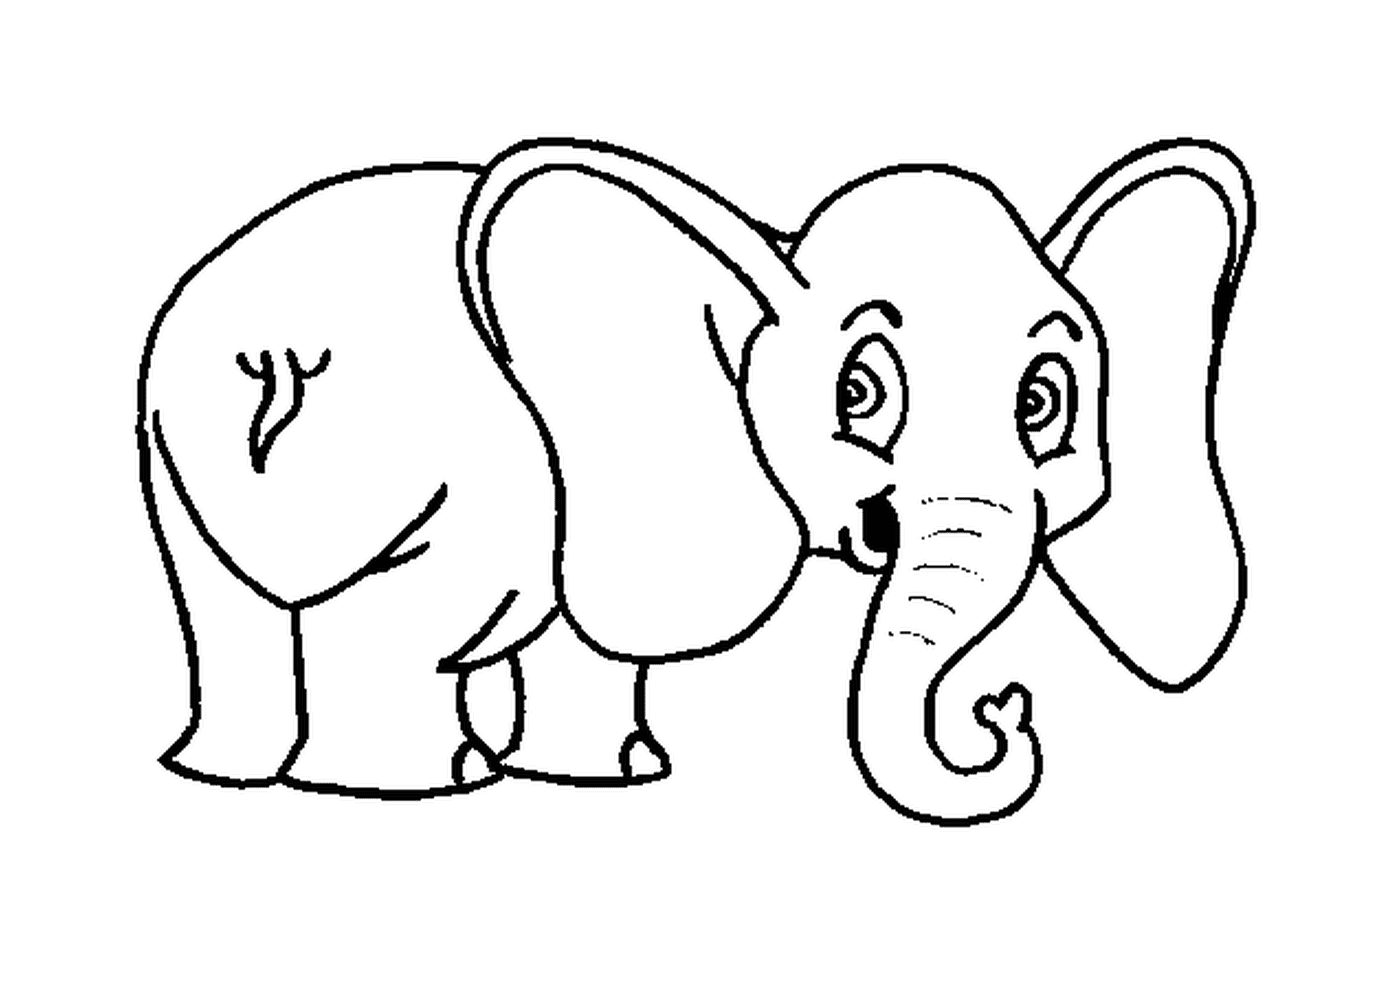  فيل يُسحب بآذان كبيرة 